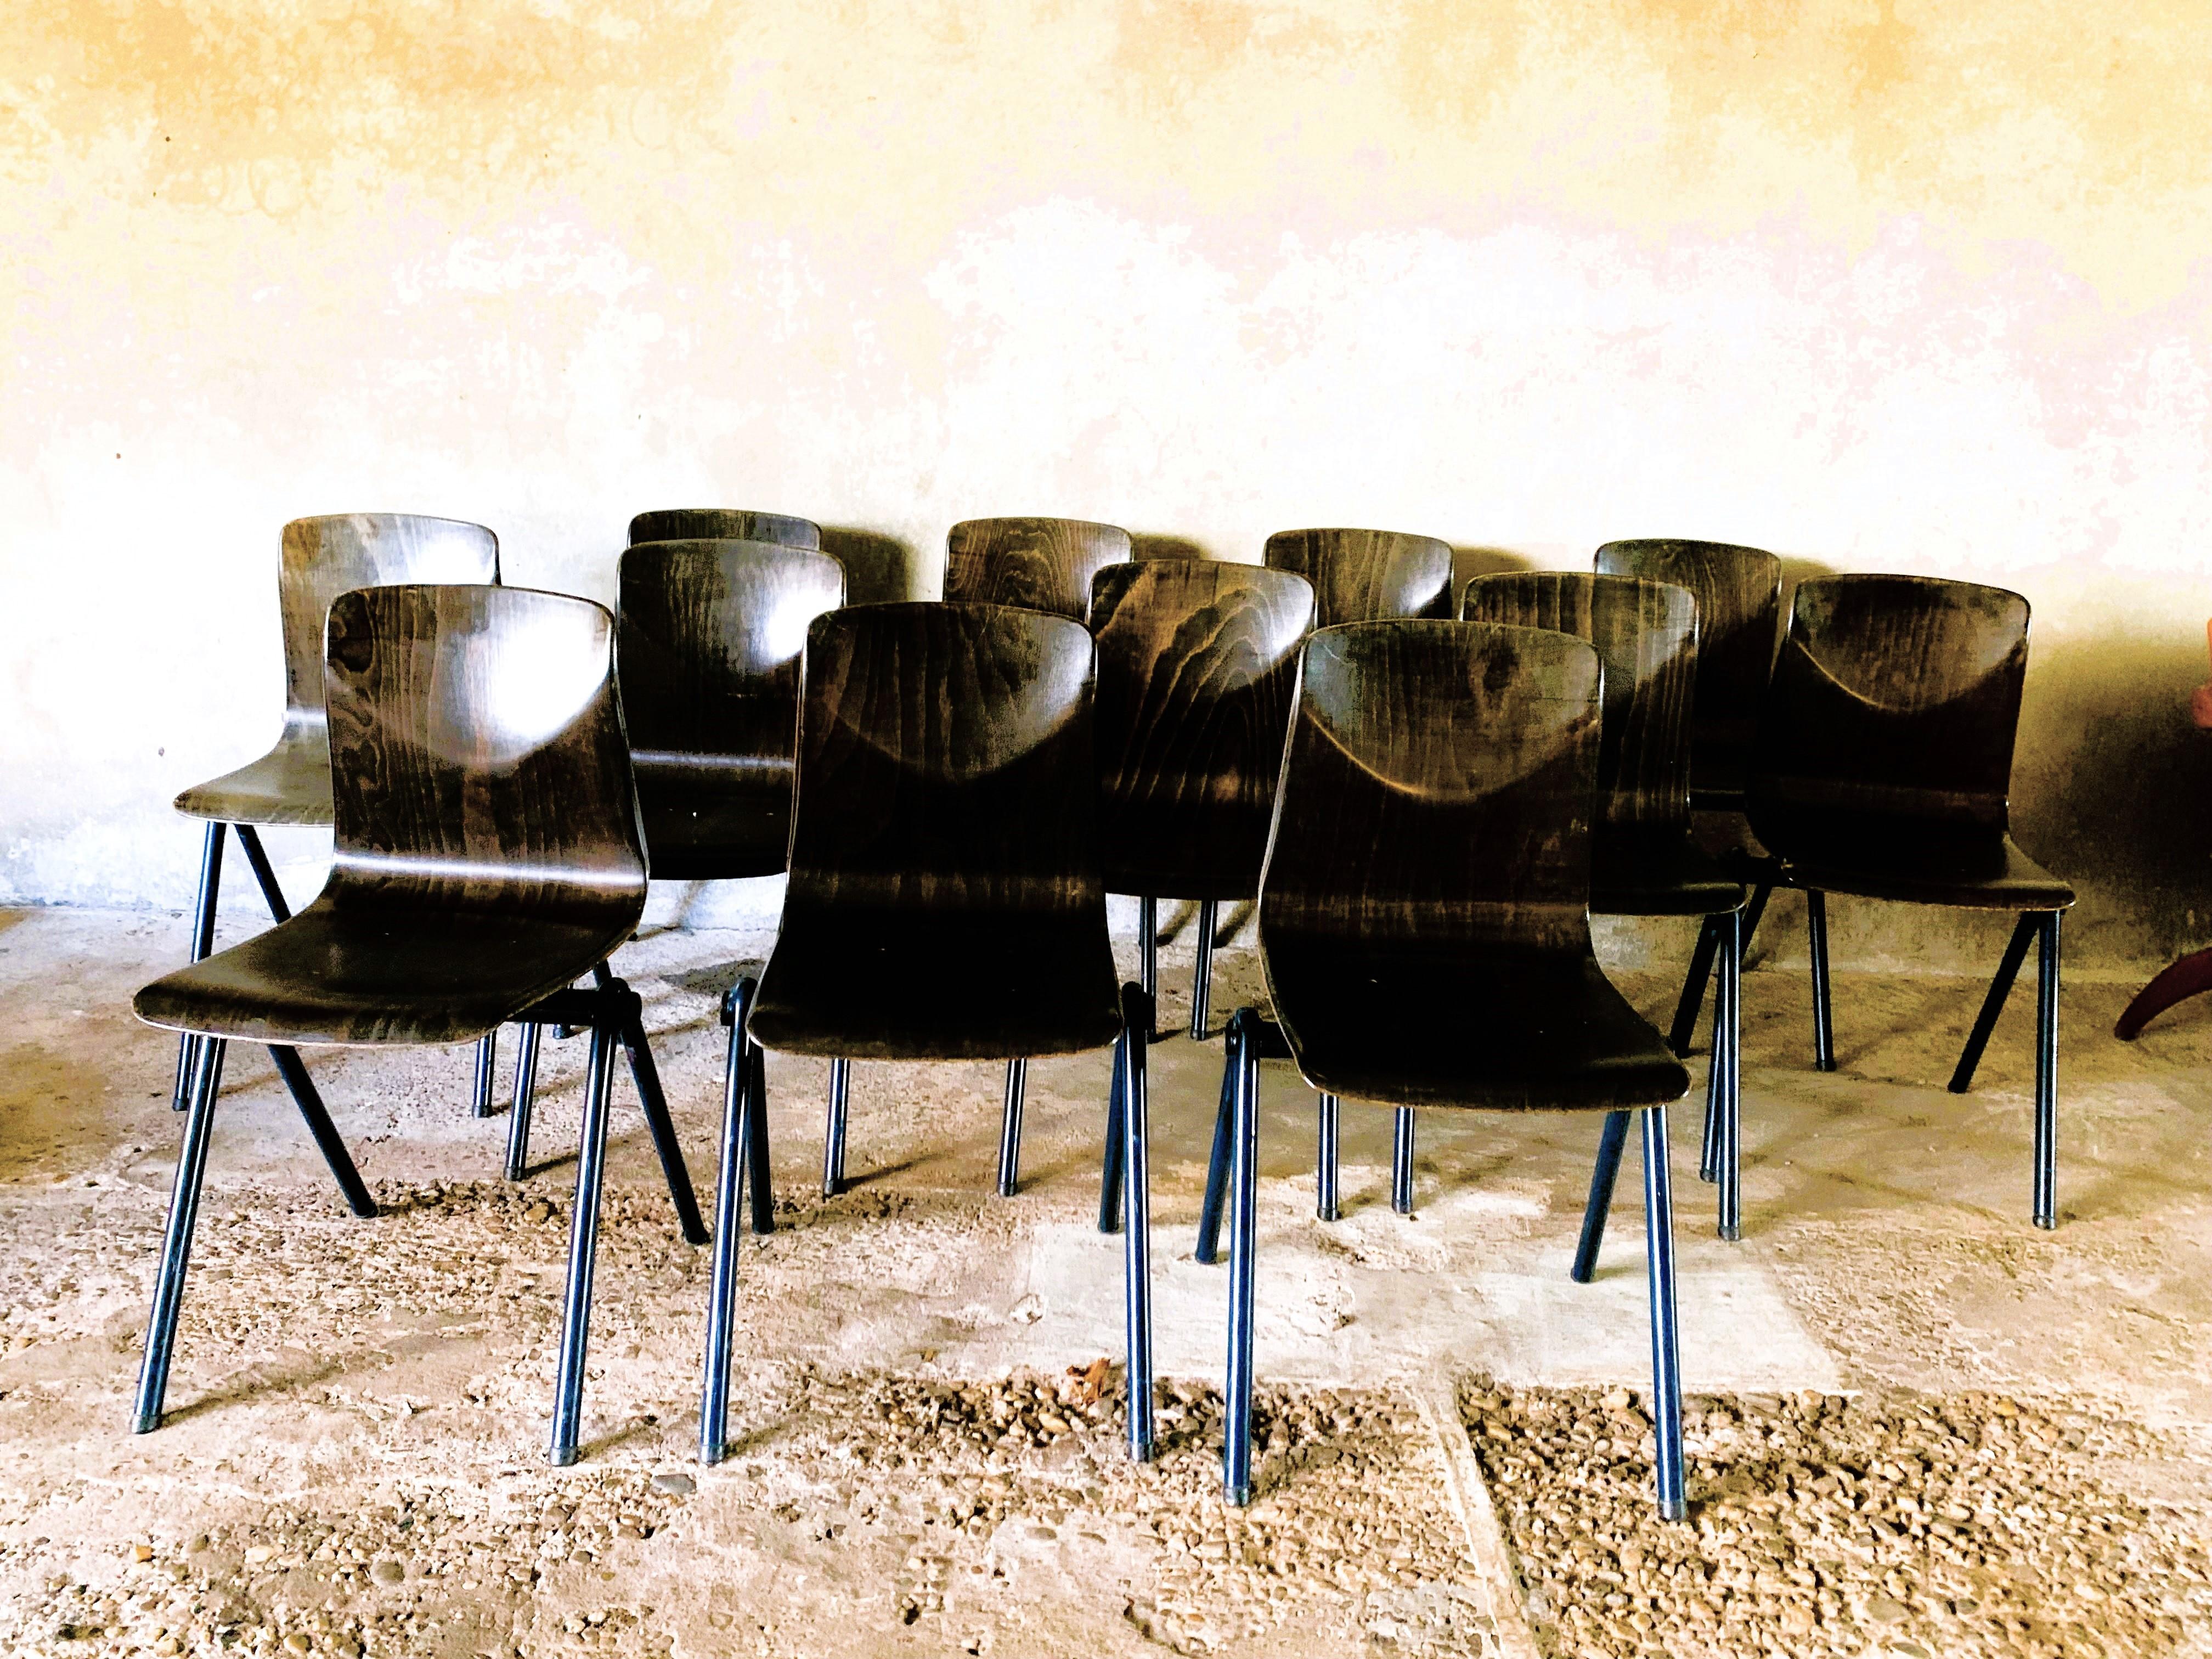 Die charakteristischen Industriestühle wurden 1967 von Galvanitas, Pagholz (Westdeutschland) und Thurop SA (Schweiz) entwickelt.
Diese Stühle mit einem Pyramidengestell sind von den Pyramidenstühlen von Wim Rietveld abgeleitet. Auch die Stühle haben